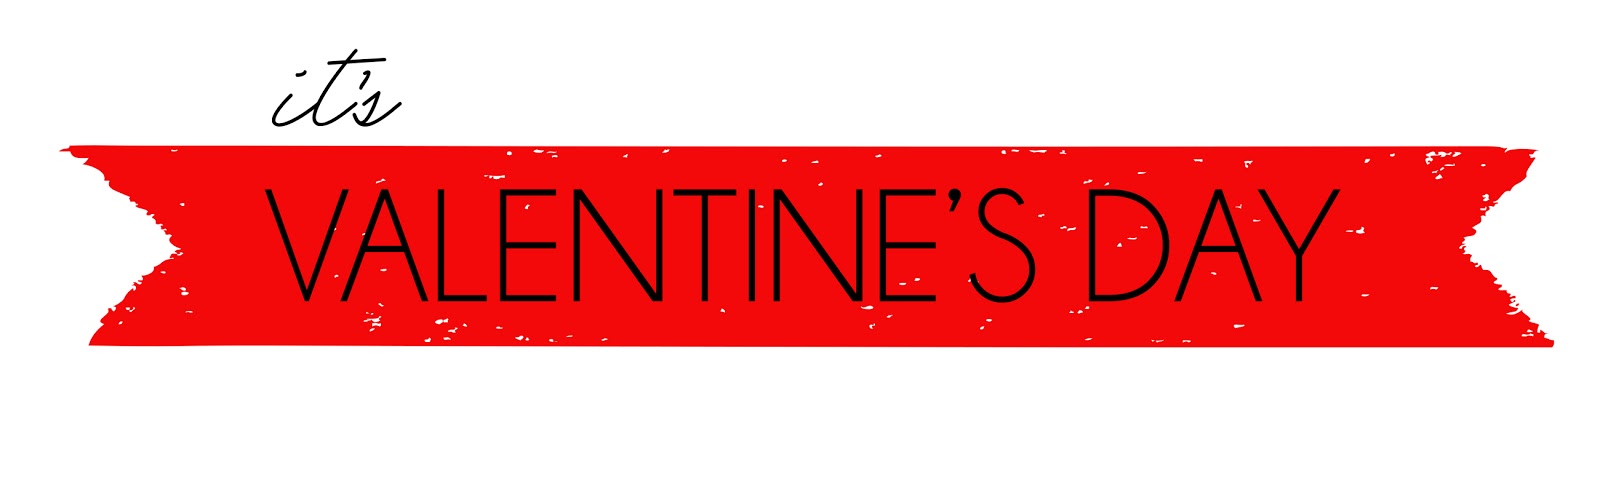 valentine clip art banner - photo #31